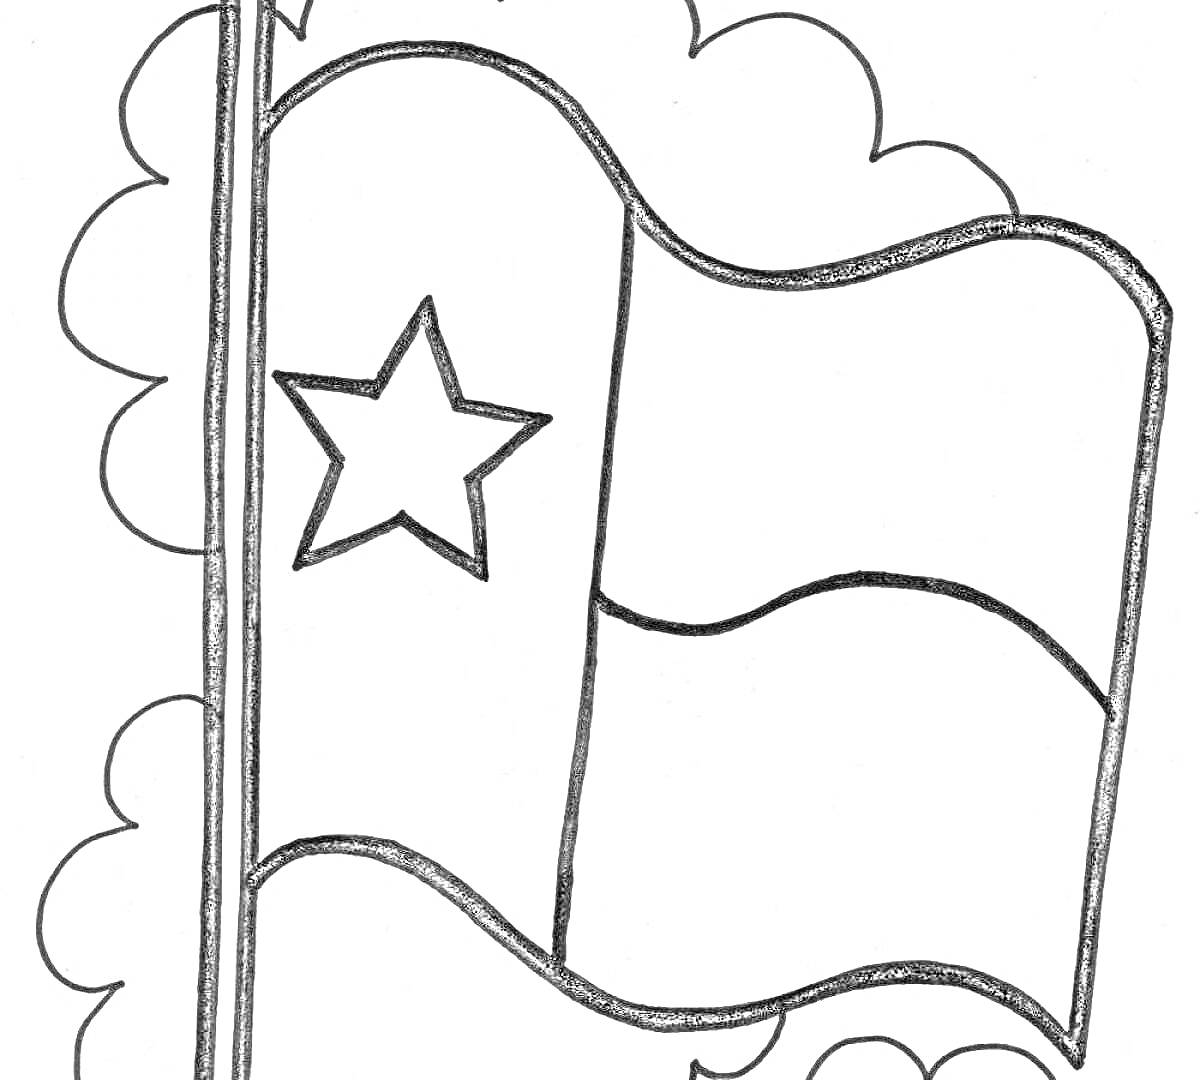 Флаг с тремя горизонтальными полосами и звездой, на фоне облаков